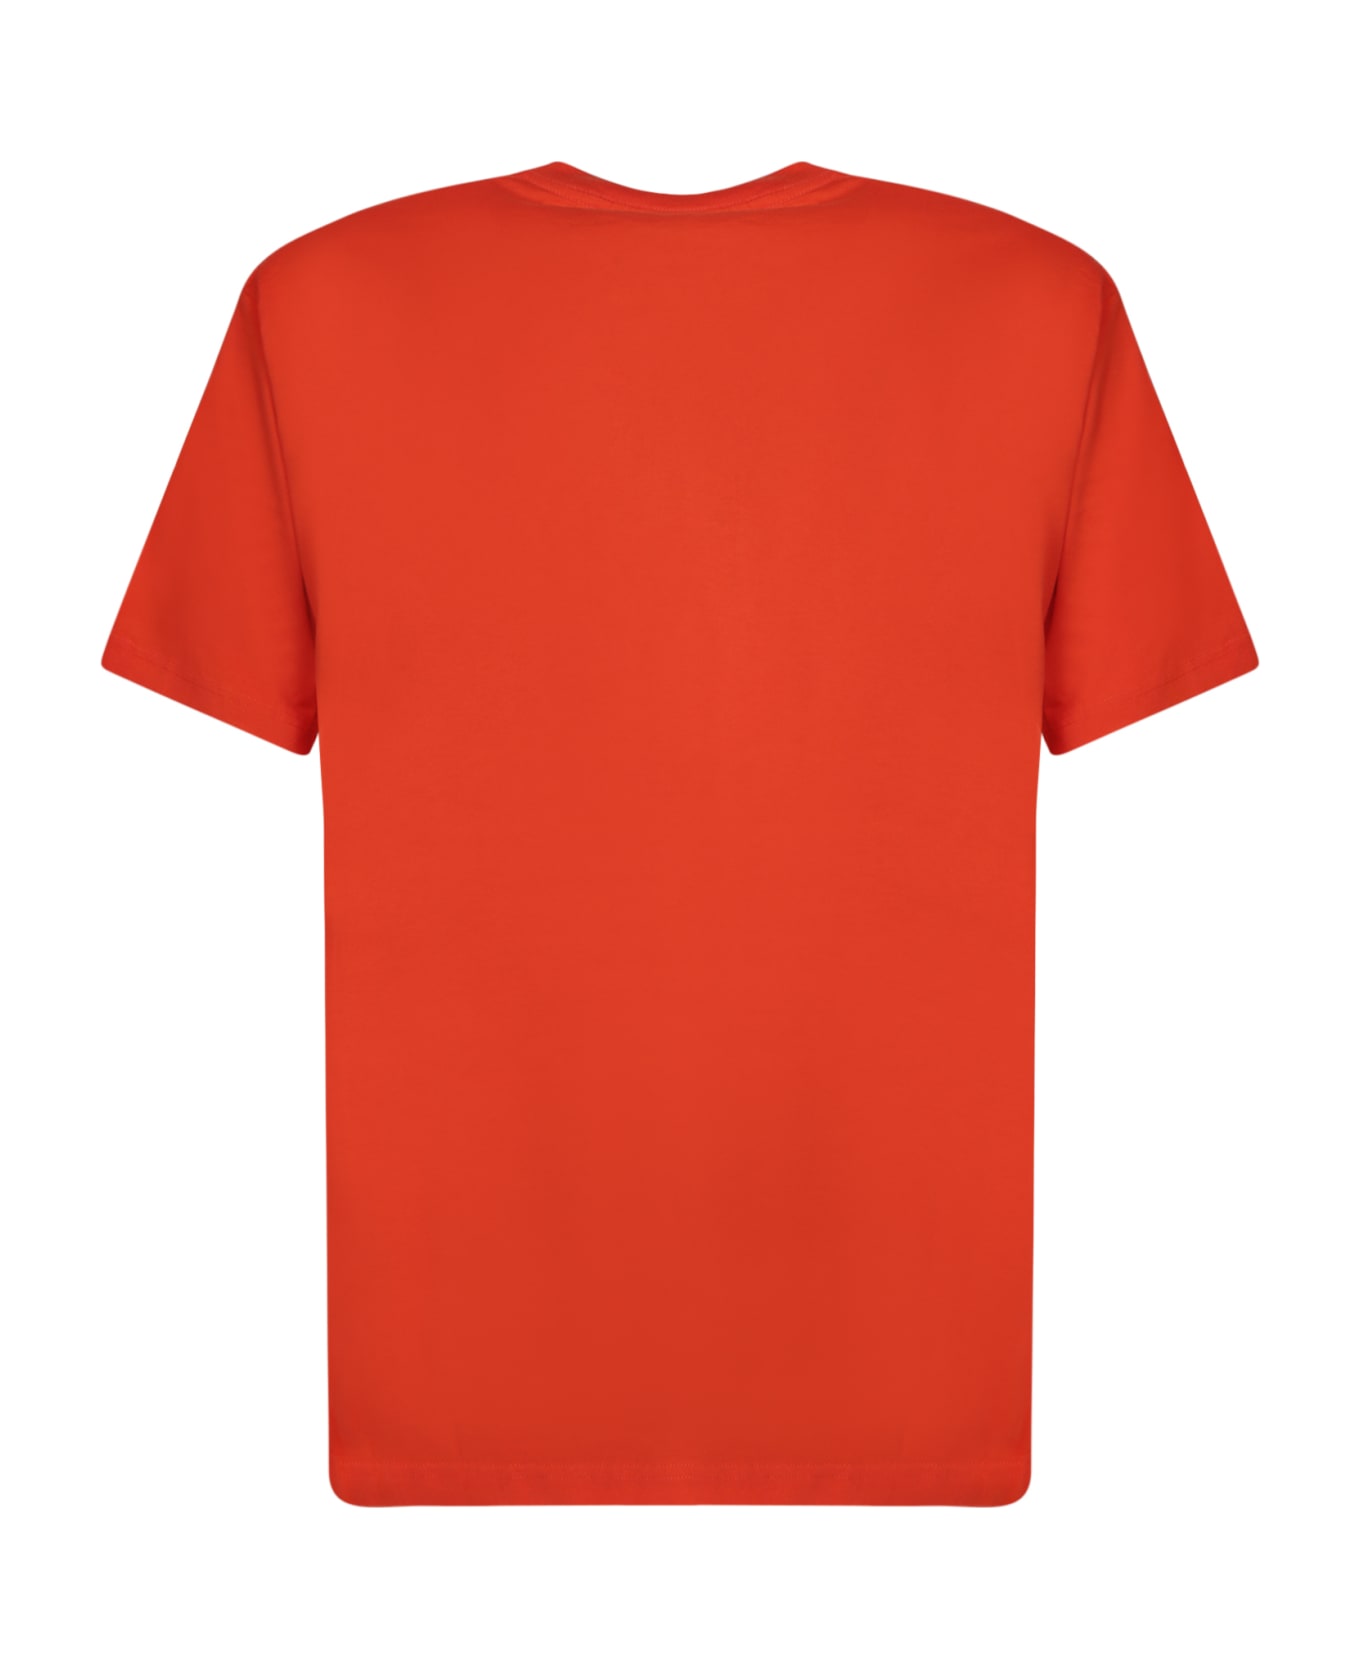 Fuct Crossed Fuct Orange T-shirt - Orange